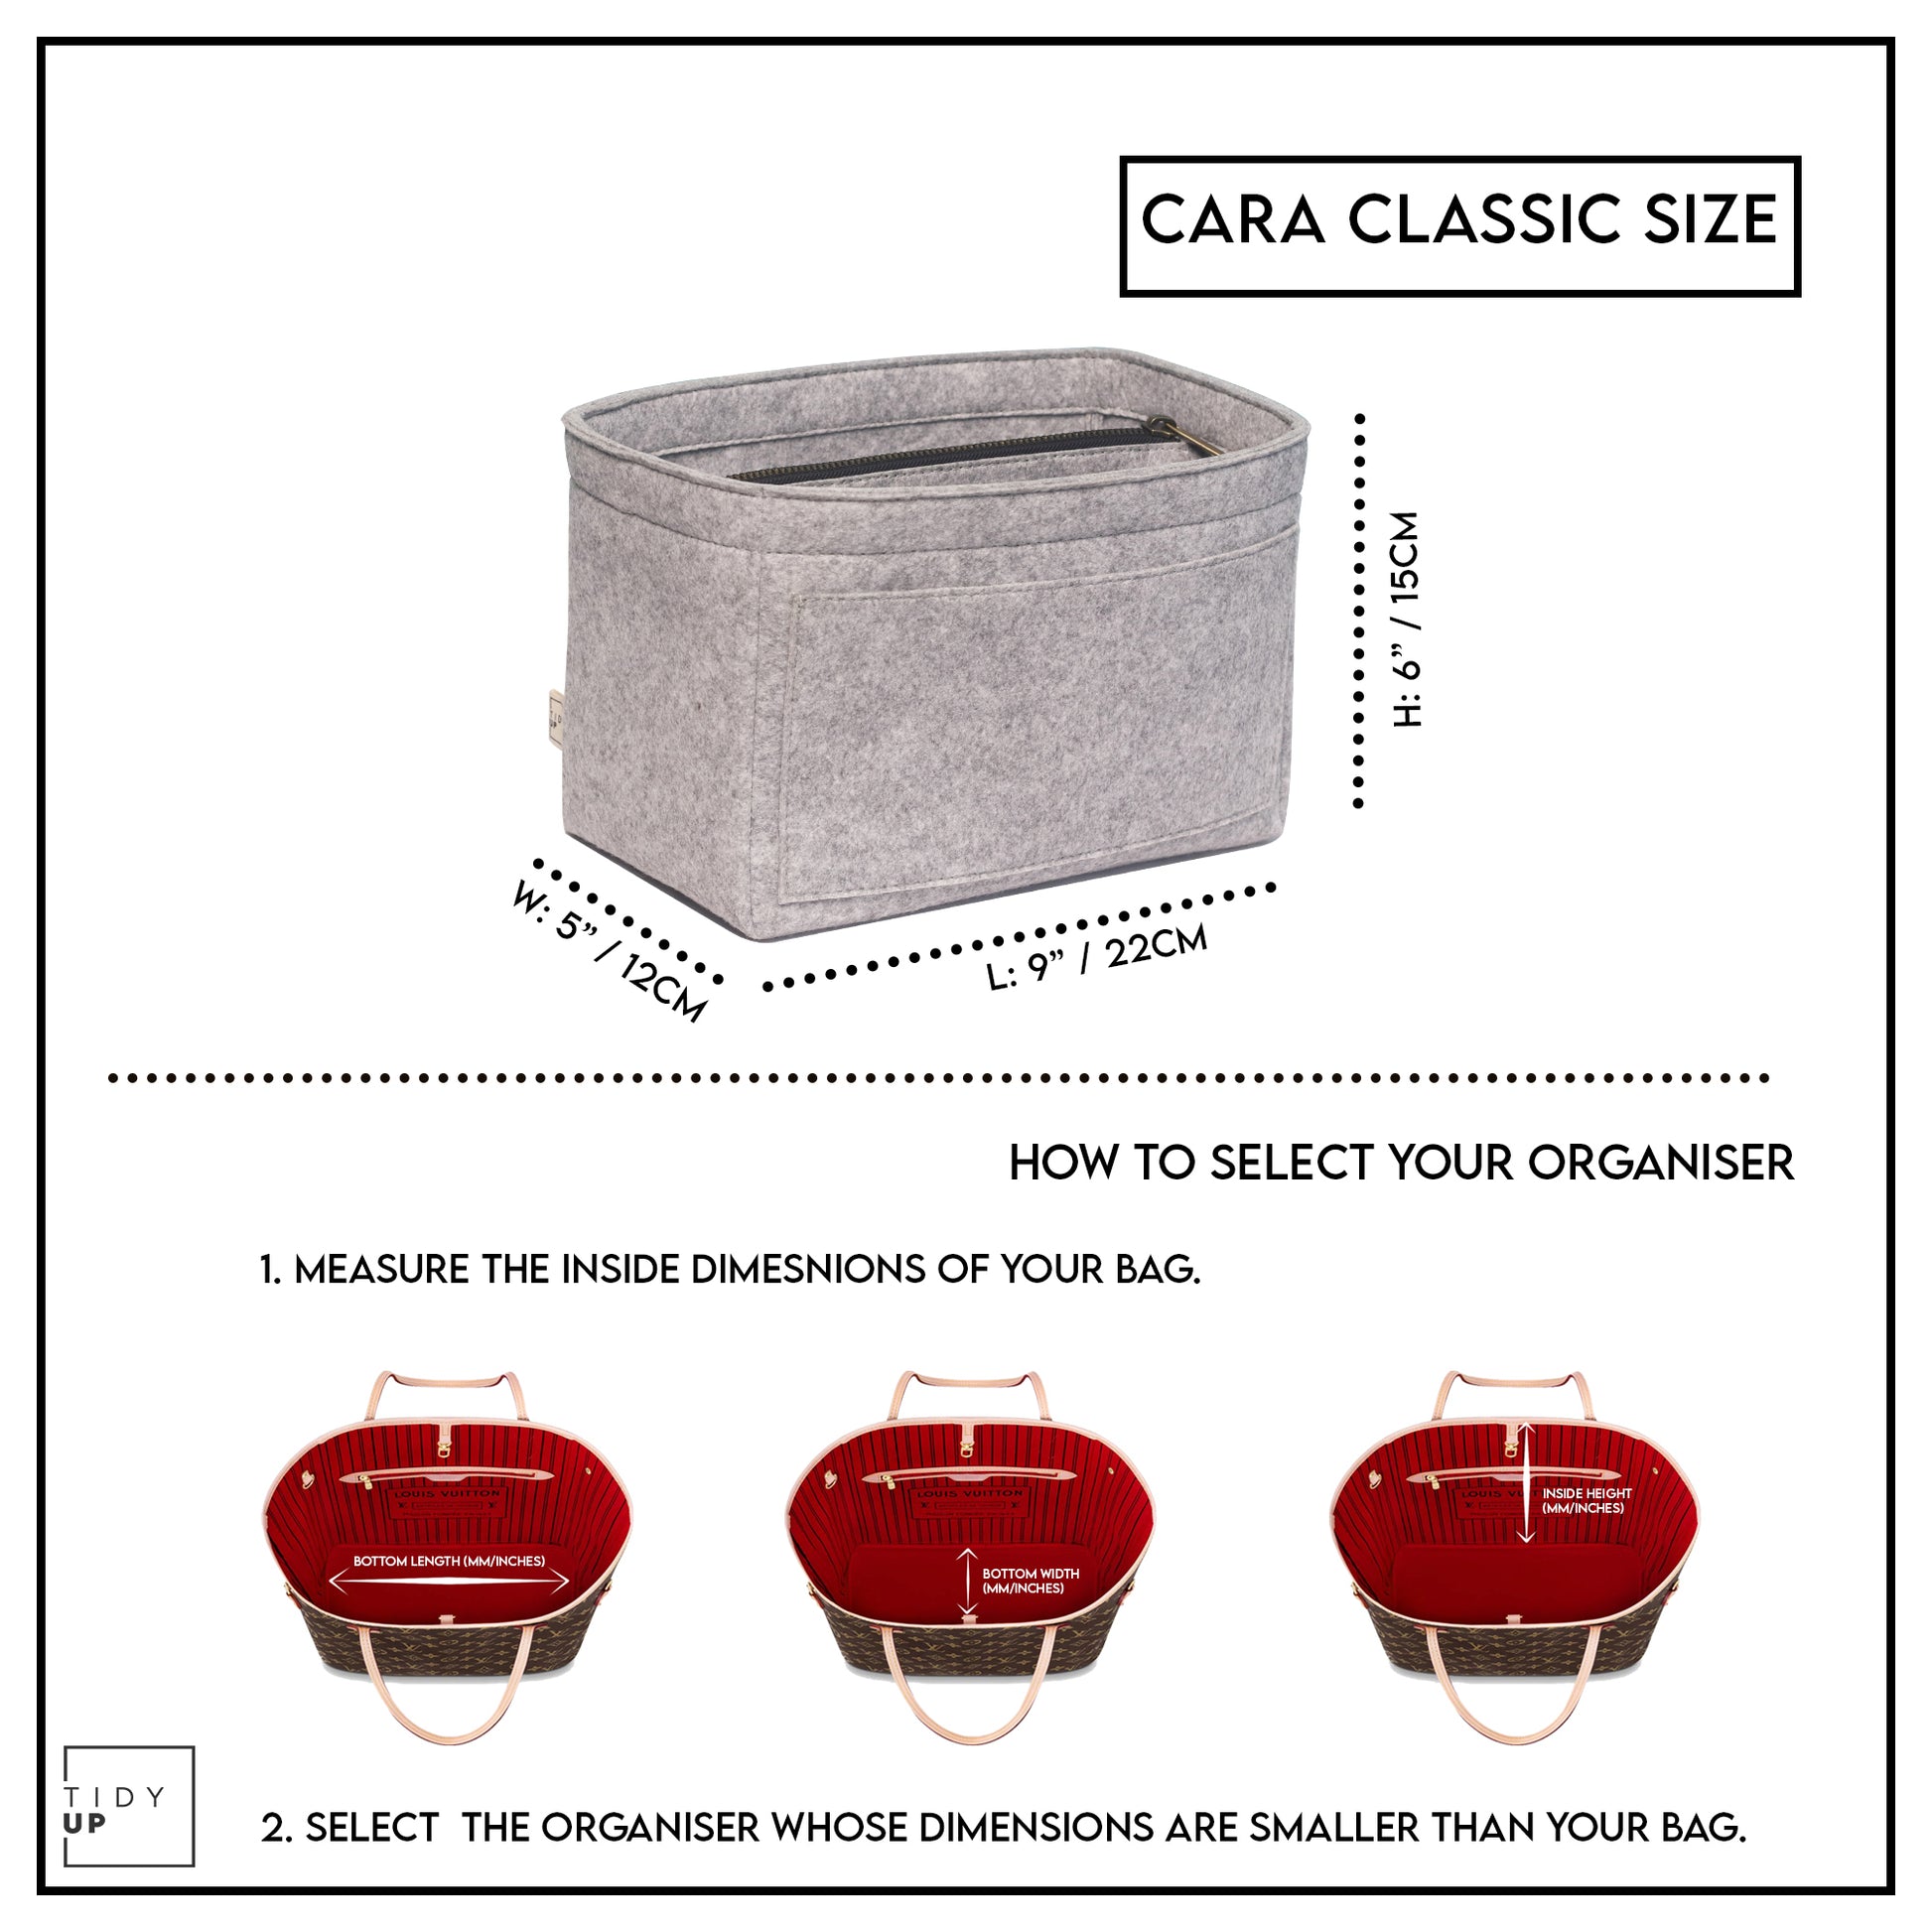 TidyUp Cara Classic Grey Bag Organiser Dimensions